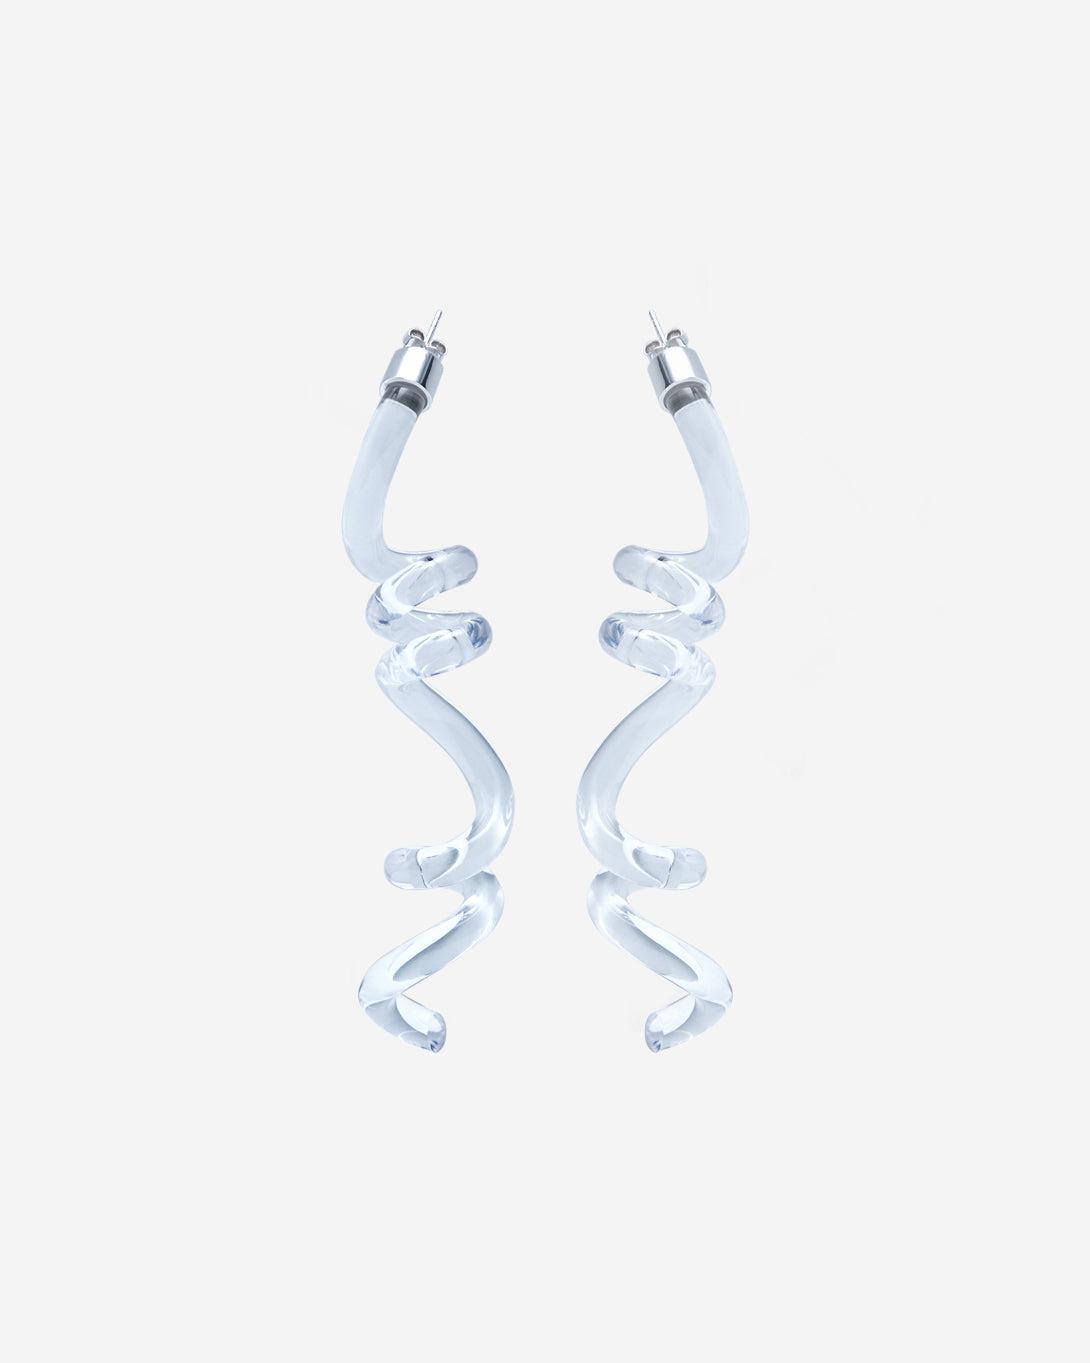 Twirl Earrings - Jewelry - Milko Boyarov - Elevastor